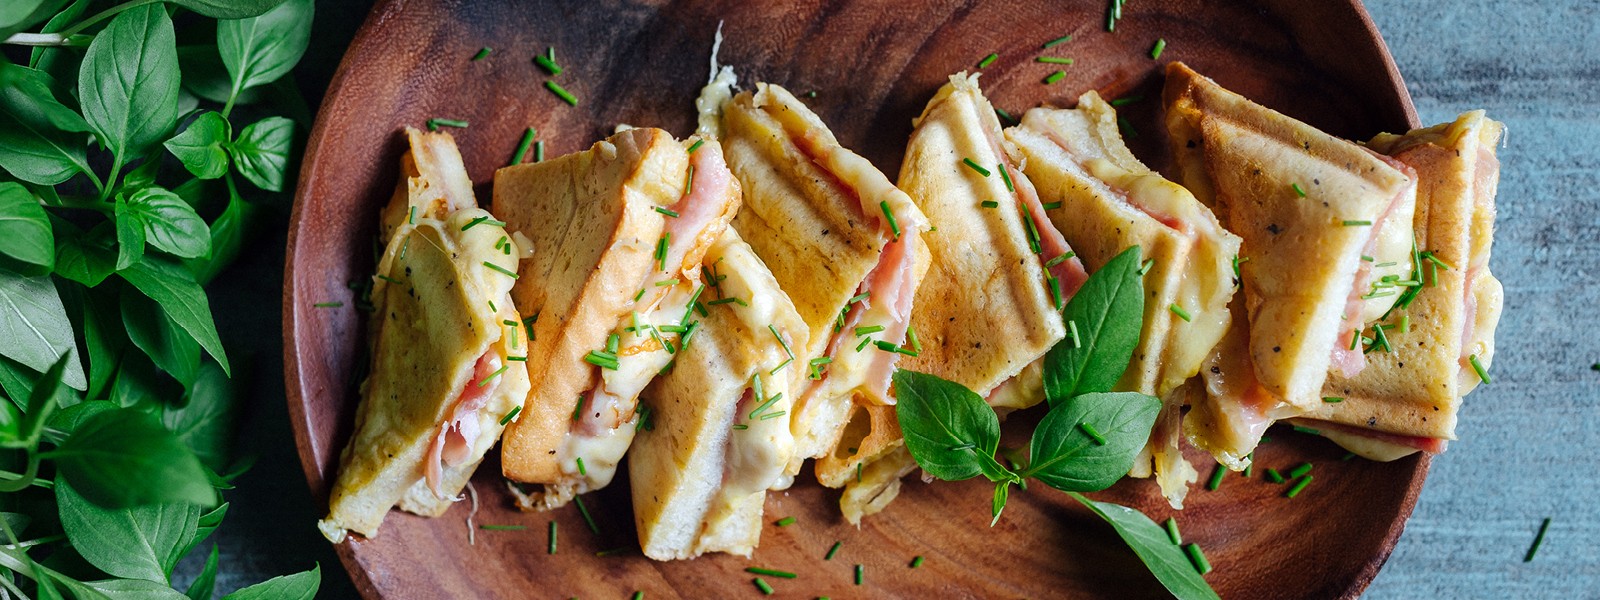 Francouzský toast naslano - Monte Cristo sendvič